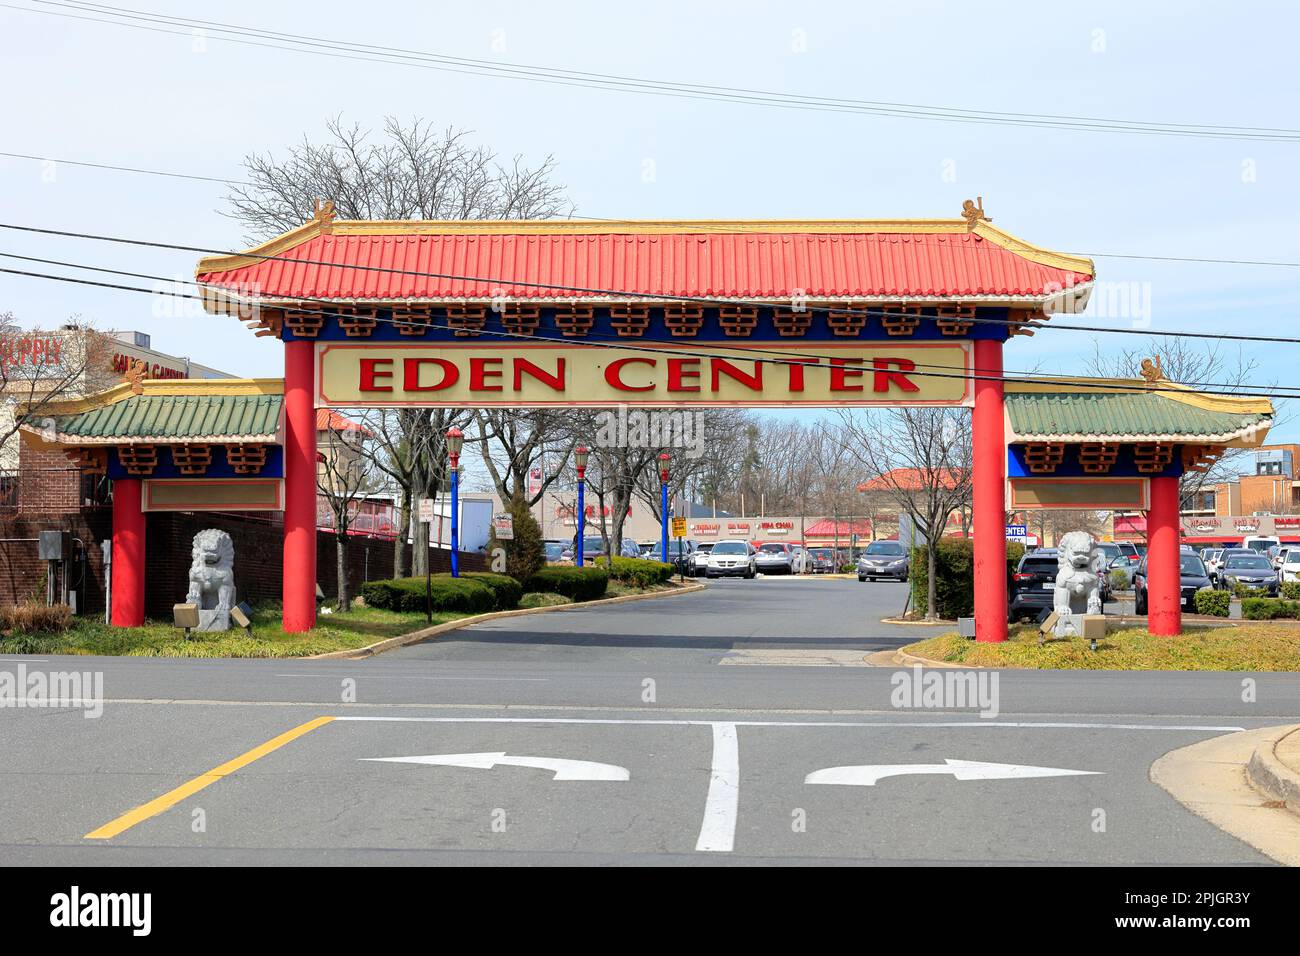 Arco sopra il centro commerciale Eden Center a Falls Church, Virginia. Il centro commerciale ospita numerosi negozi e ristoranti di proprietà vietnamita. Foto Stock